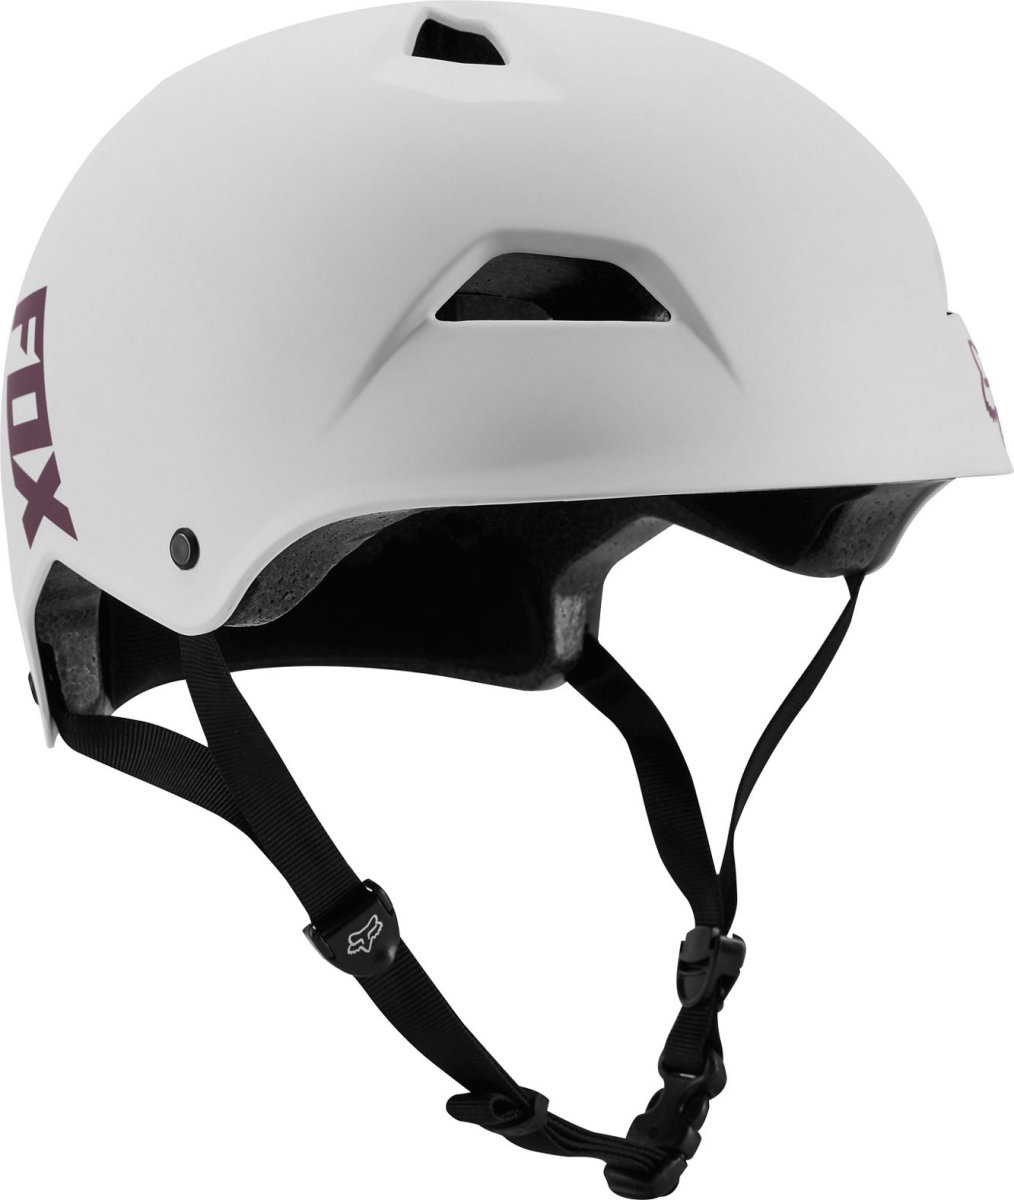 Шлем Fox Flight Sport Helmet (White/Berry) 20184-321-M, 20184-321-S